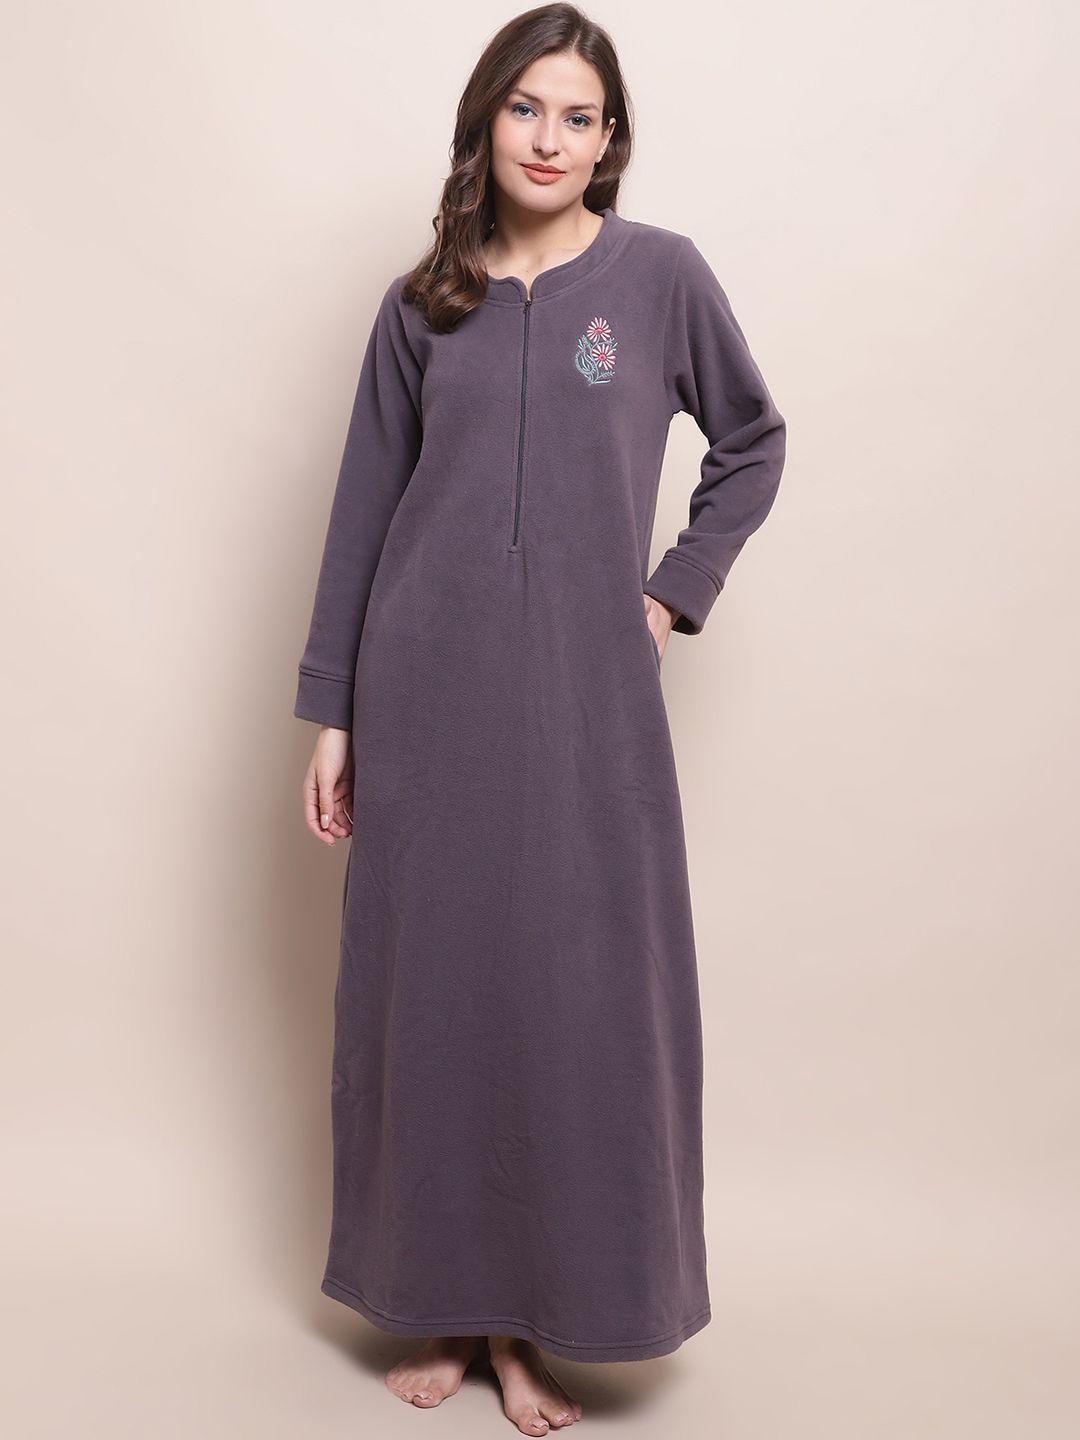 kanvin-purple-embroidered-fleece-maxi-nightdress